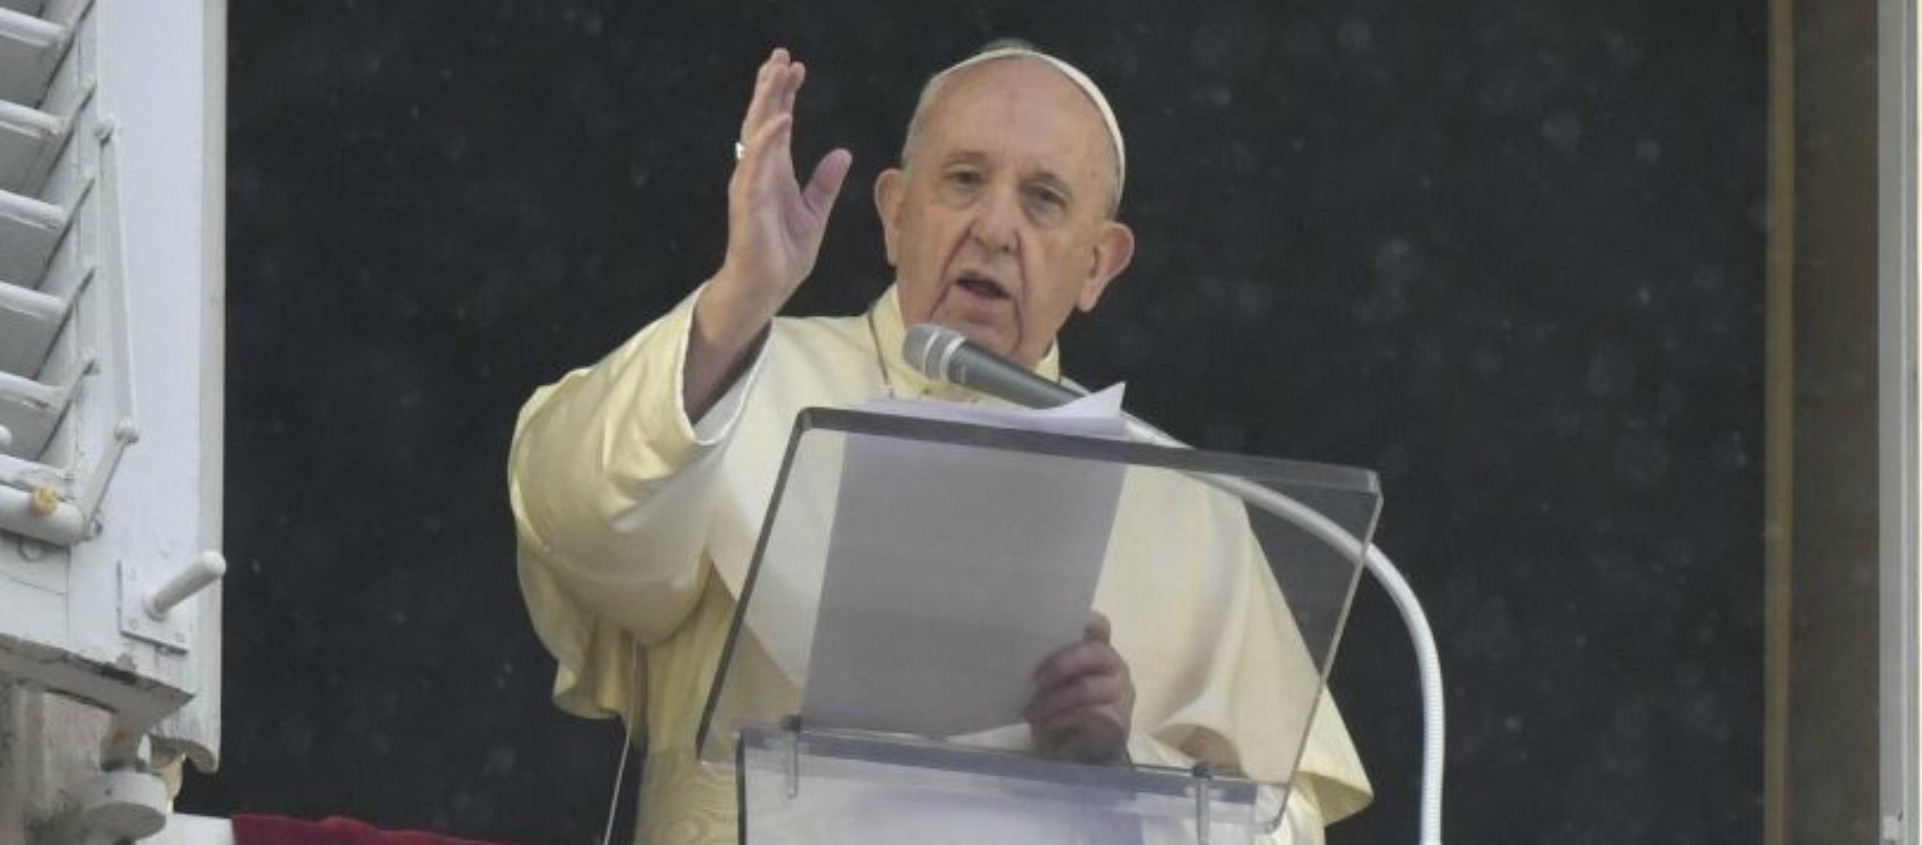 Le pape François appelle à respecter les règles anti-Covid-19 Pape-palais-apostolique